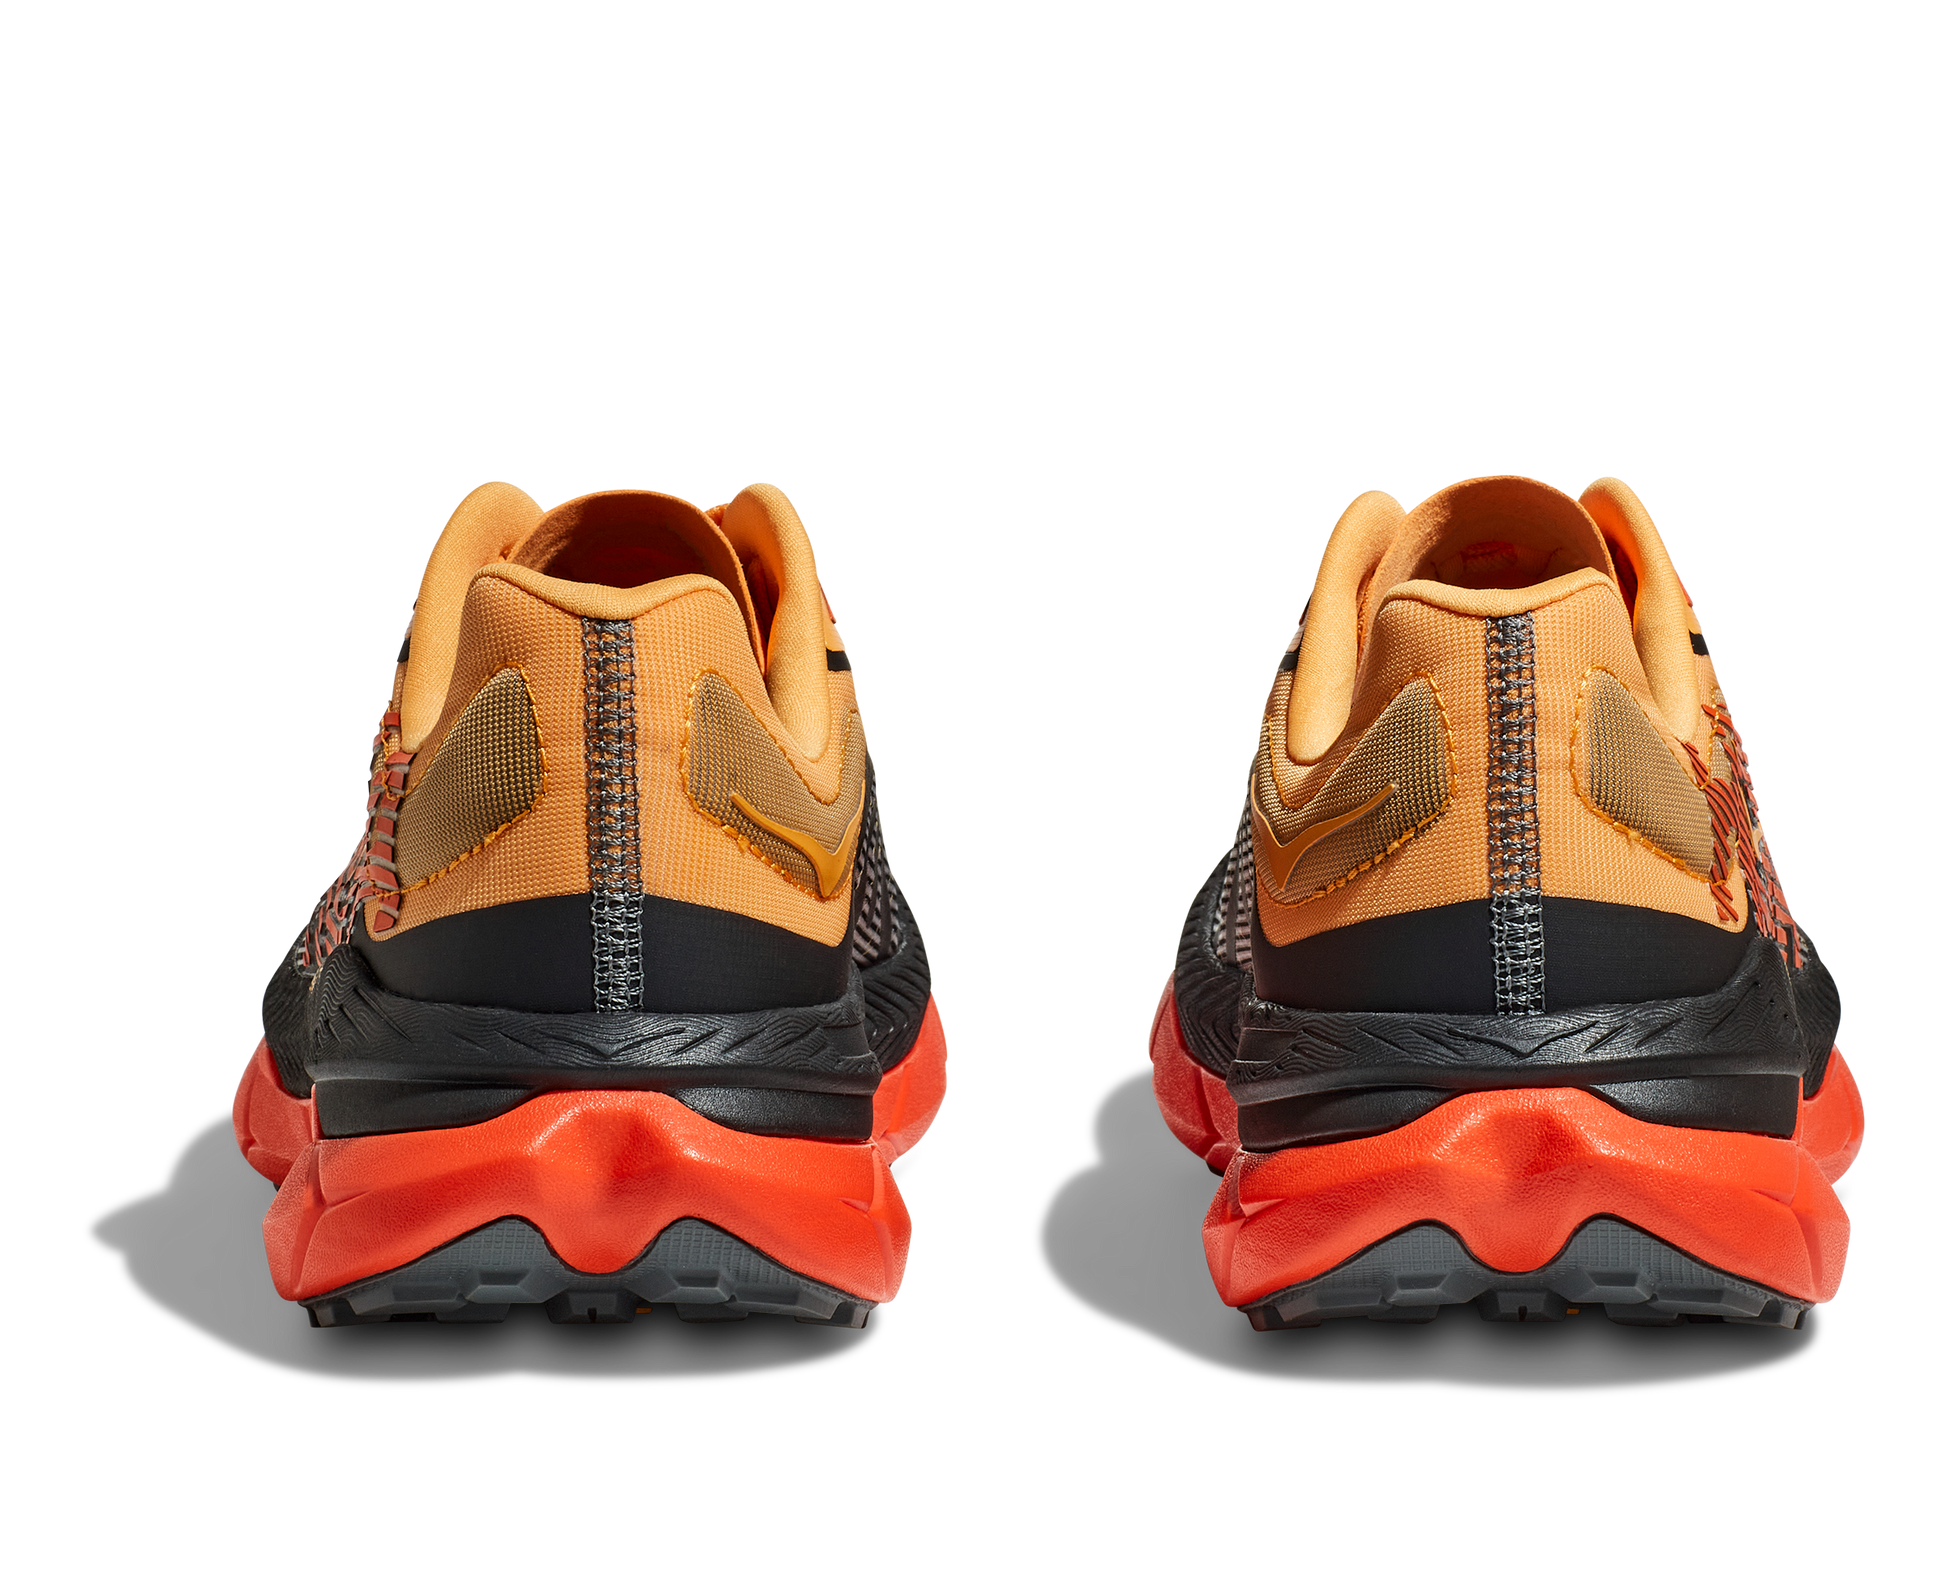 Hoka Tecton X 2, herrmodell. Svart, röd och orange i färgen som gör att utseendet utstrålar fart. Hos Hoka specialisterna i Sverige.